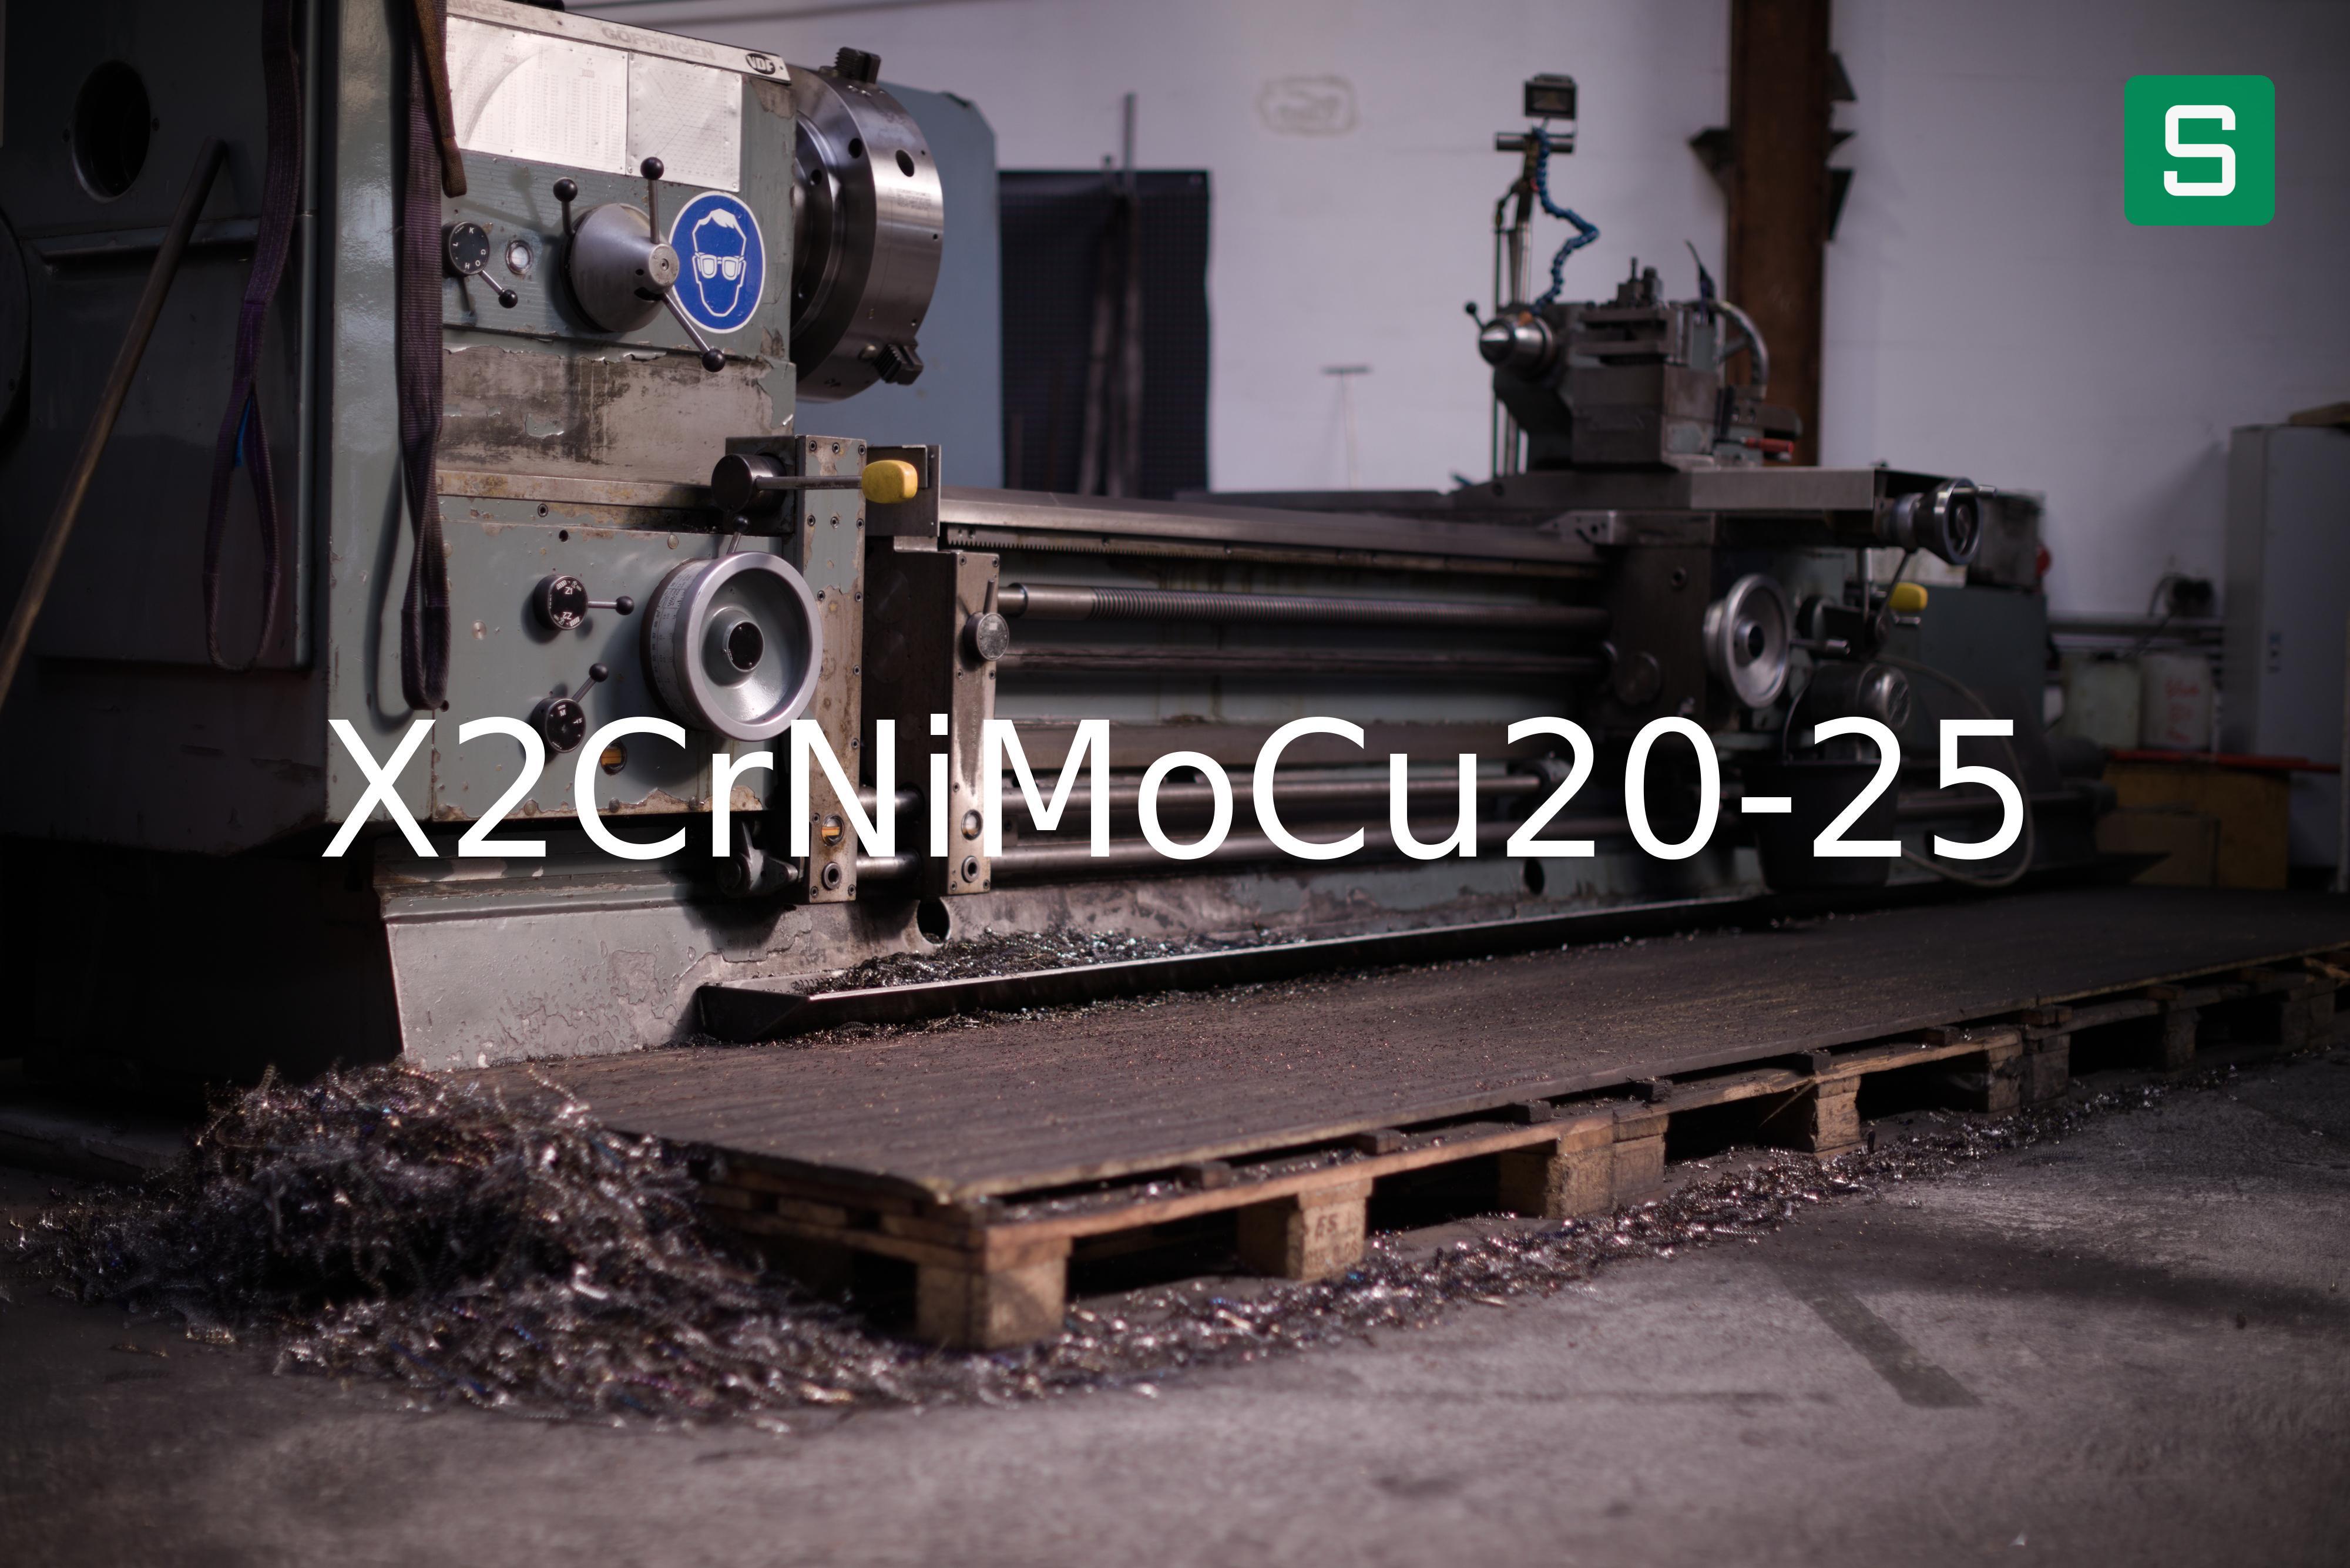 Steel Material: X2CrNiMoCu20-25